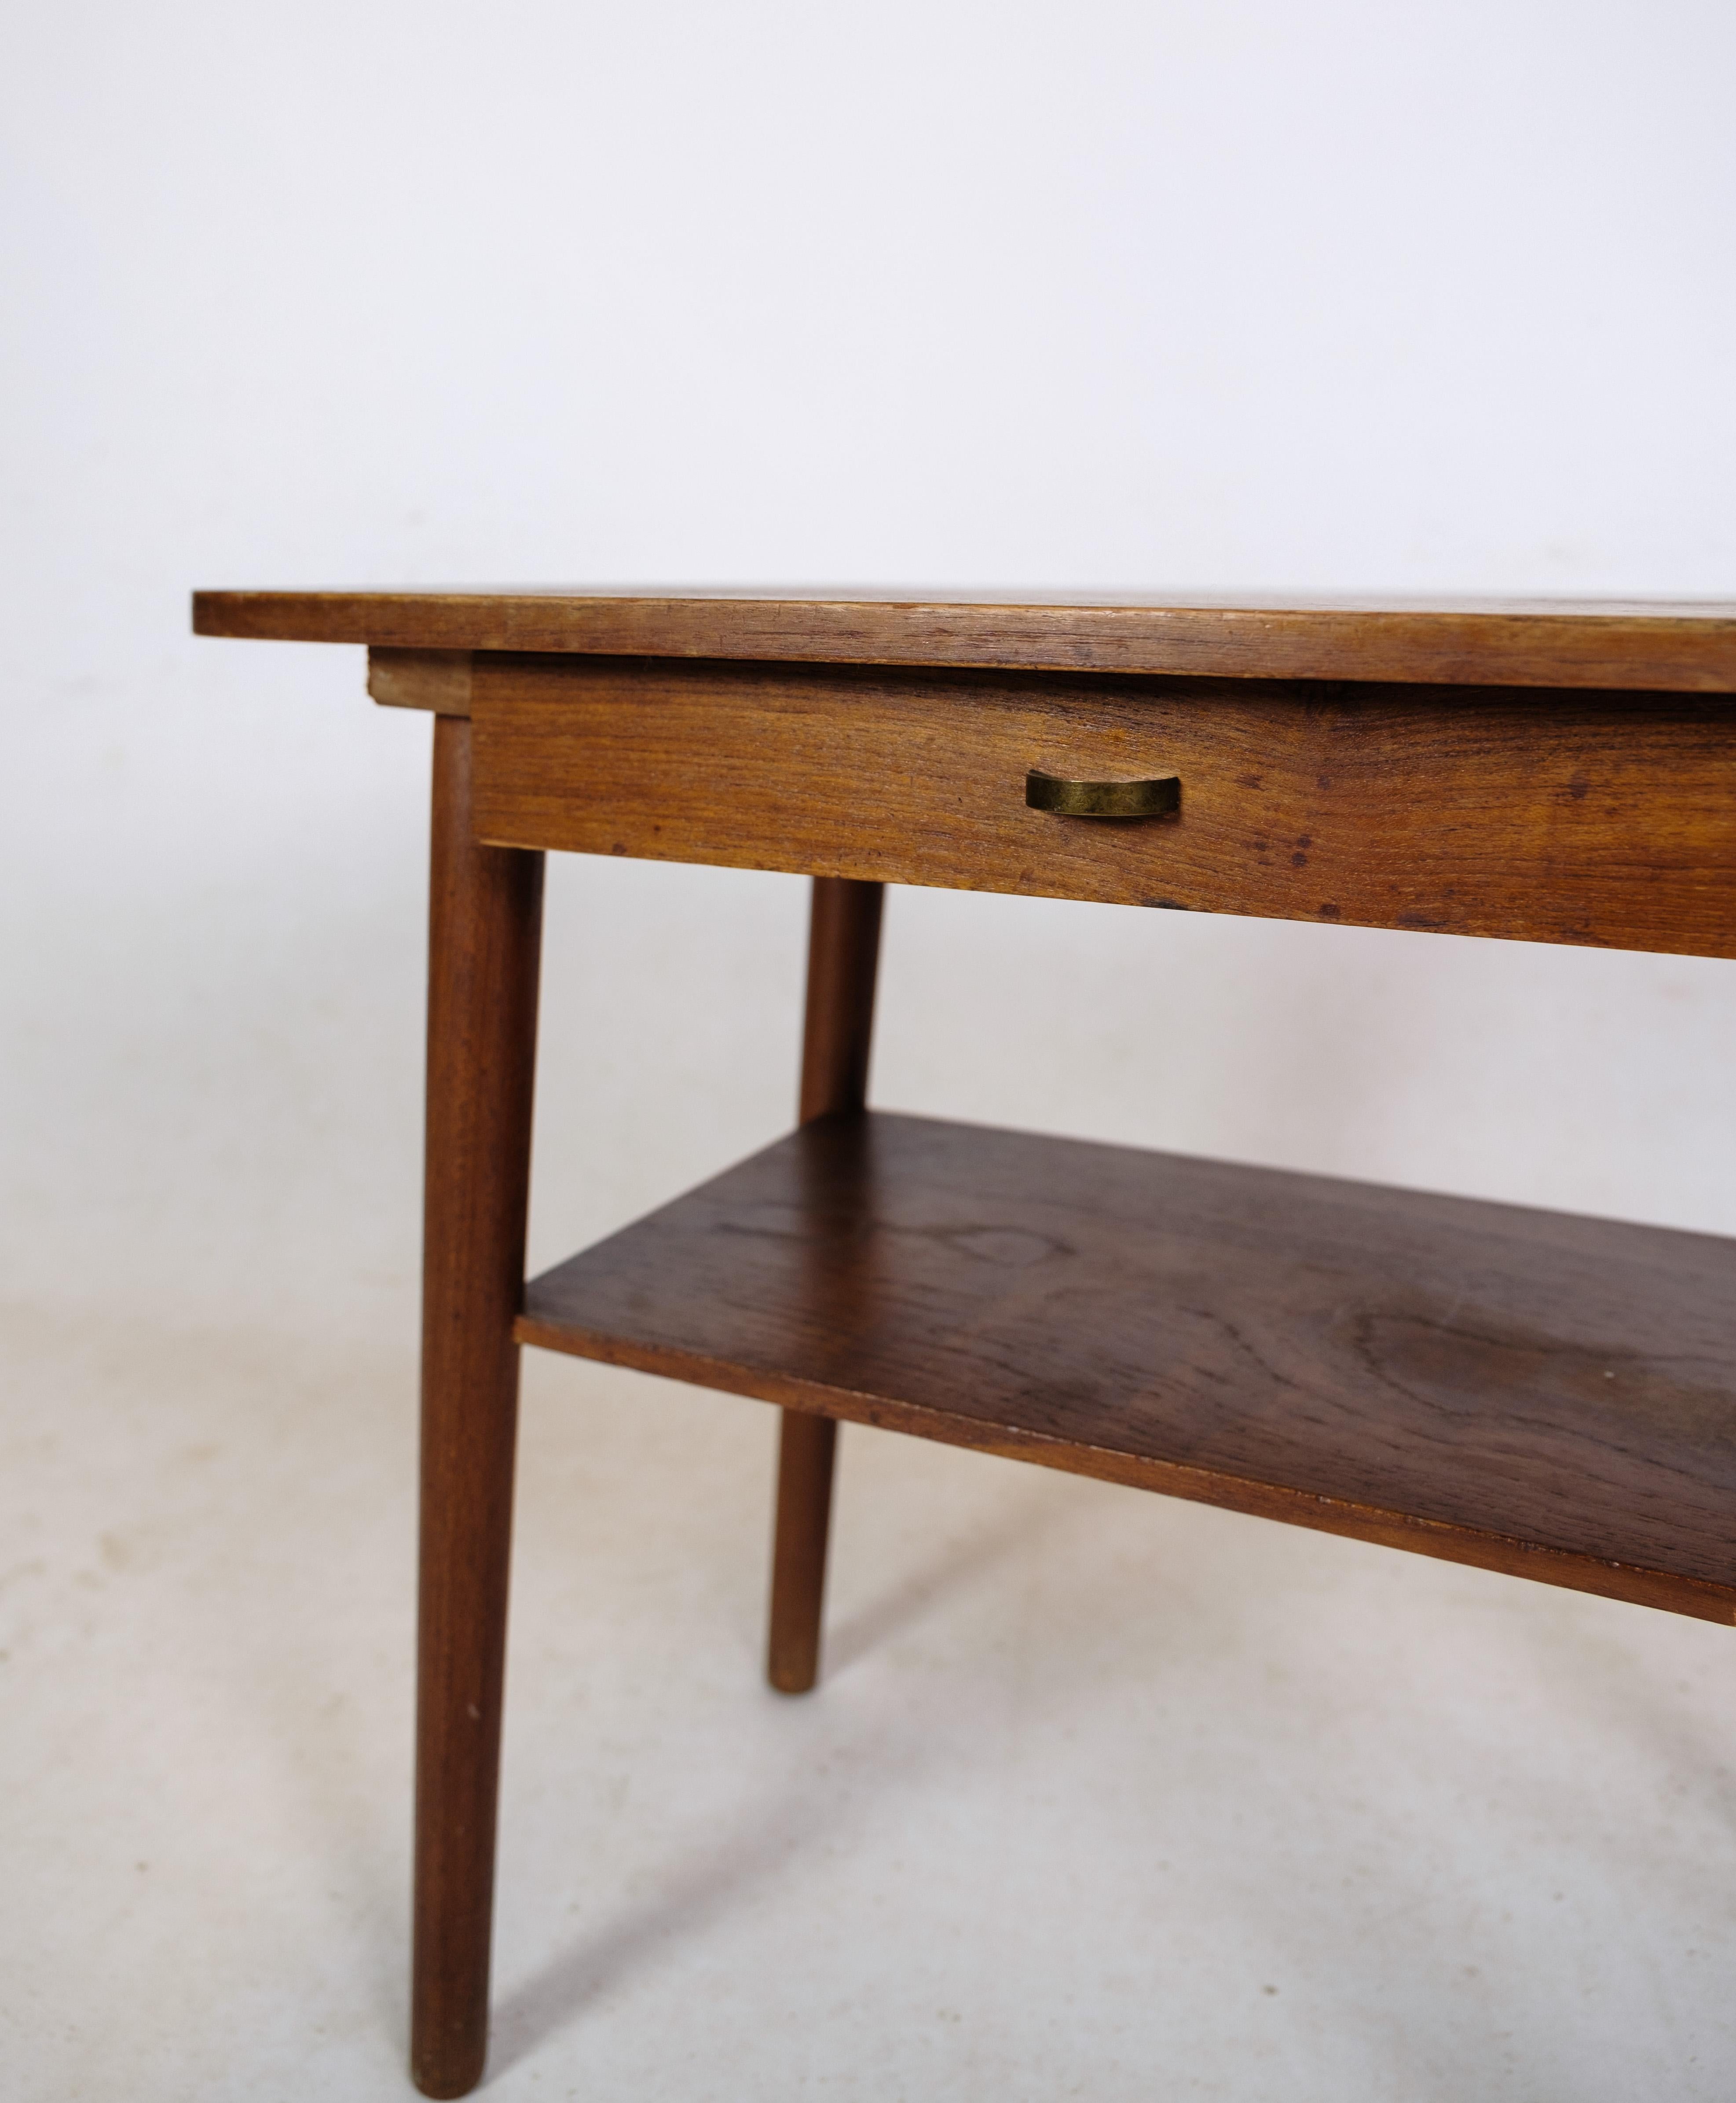 Table d'appoint / table de chevet avec tiroir et étagère en bois de teck de design danois des années 1960 environ.
Mesures en cm : H:48 L:59 P:39.5